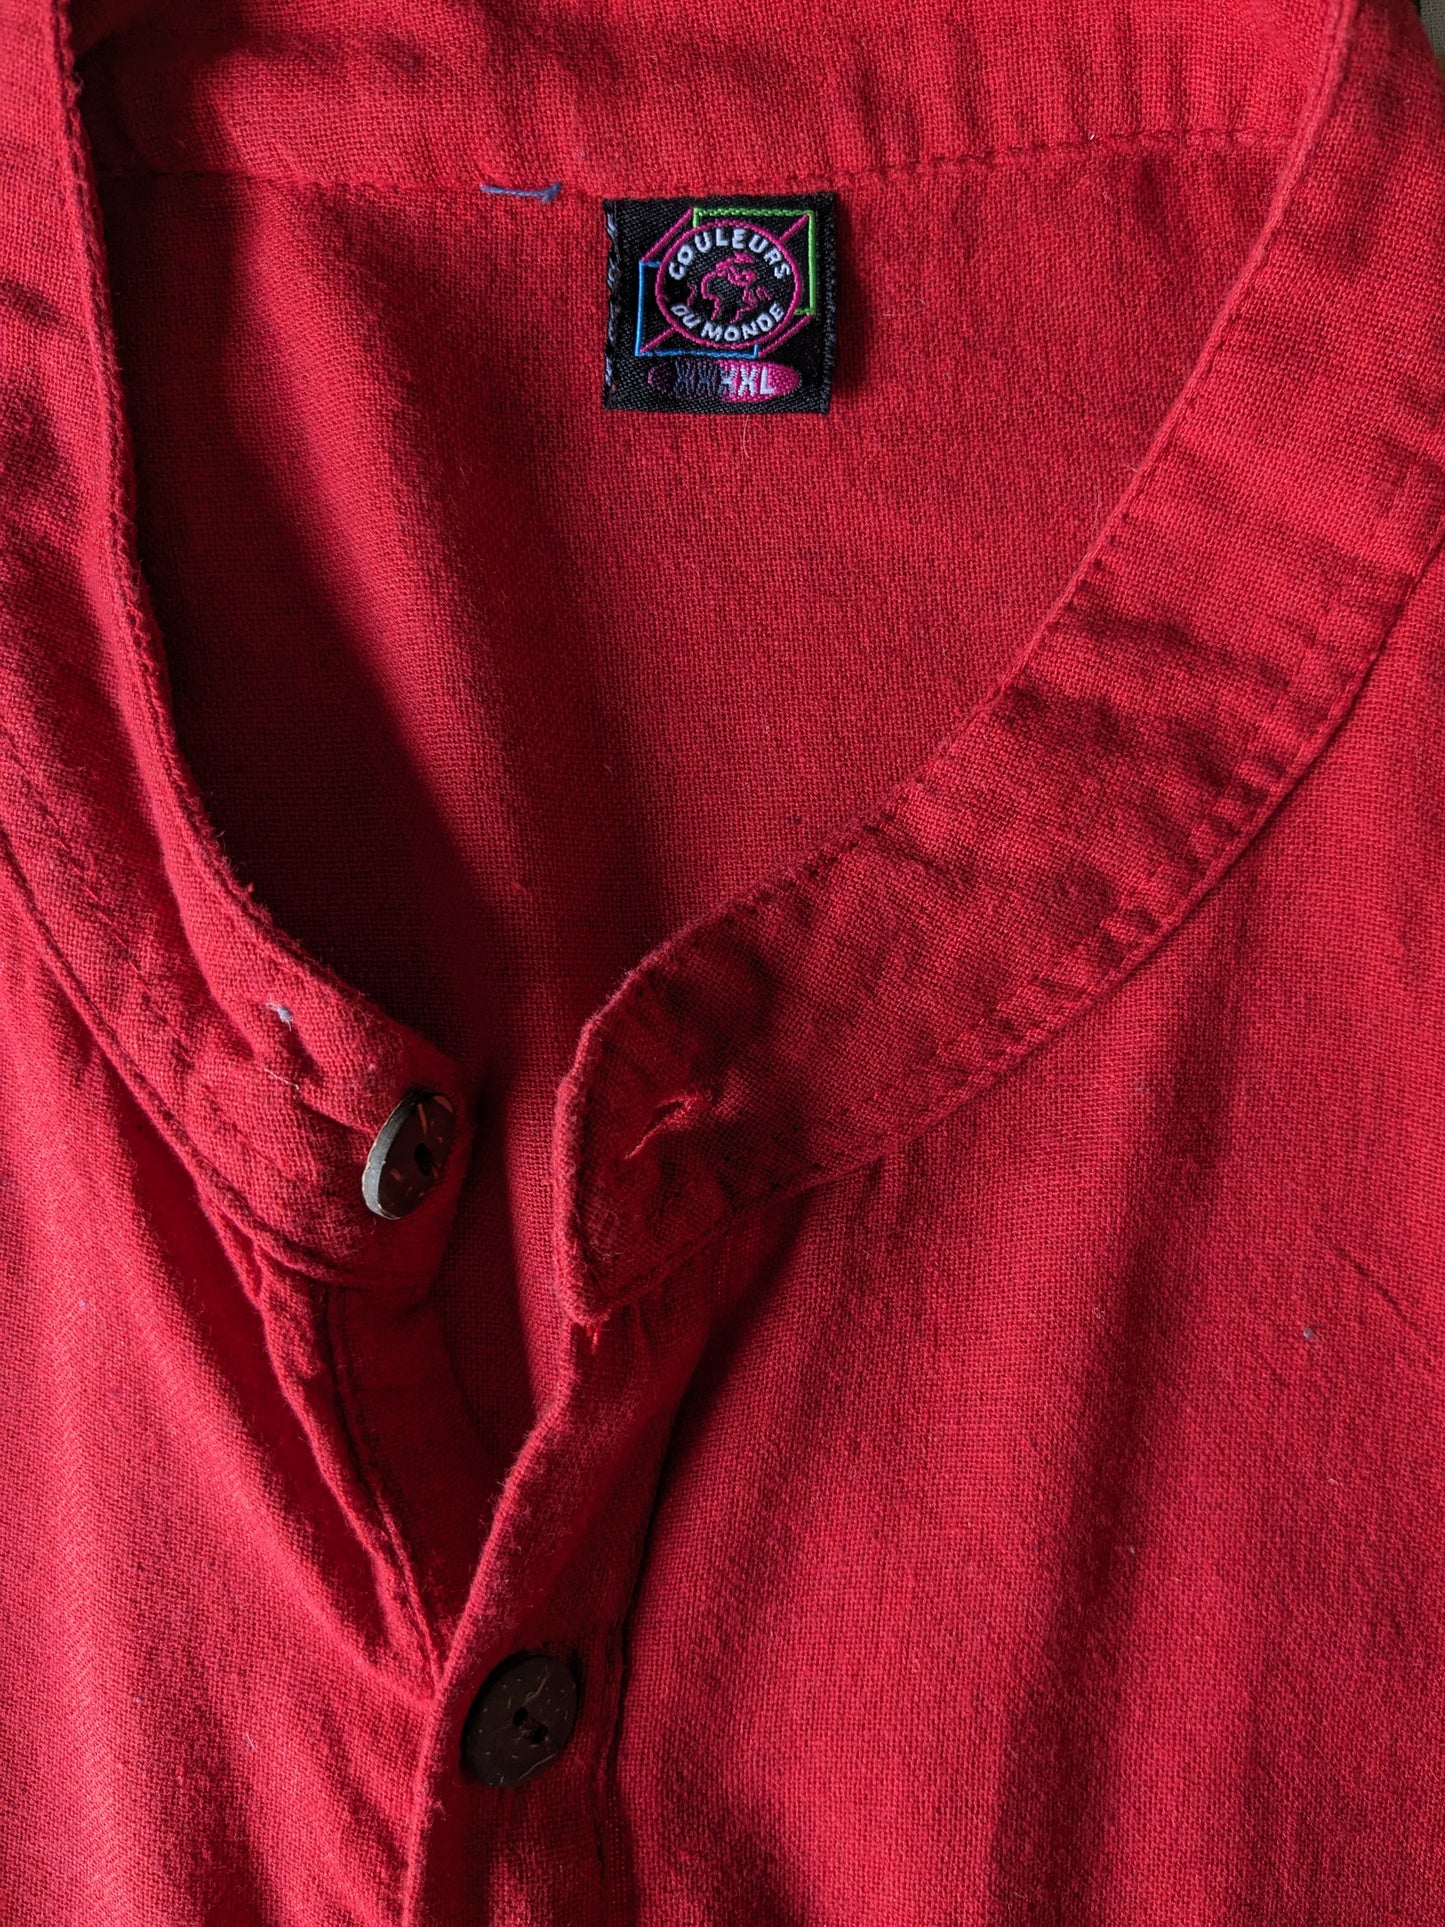 Camicia vintage couleurs du monde con mao / agricoltore / colletto in piedi e 1 borsa. Rosso colorato. Dimensione 2xl / xxl.